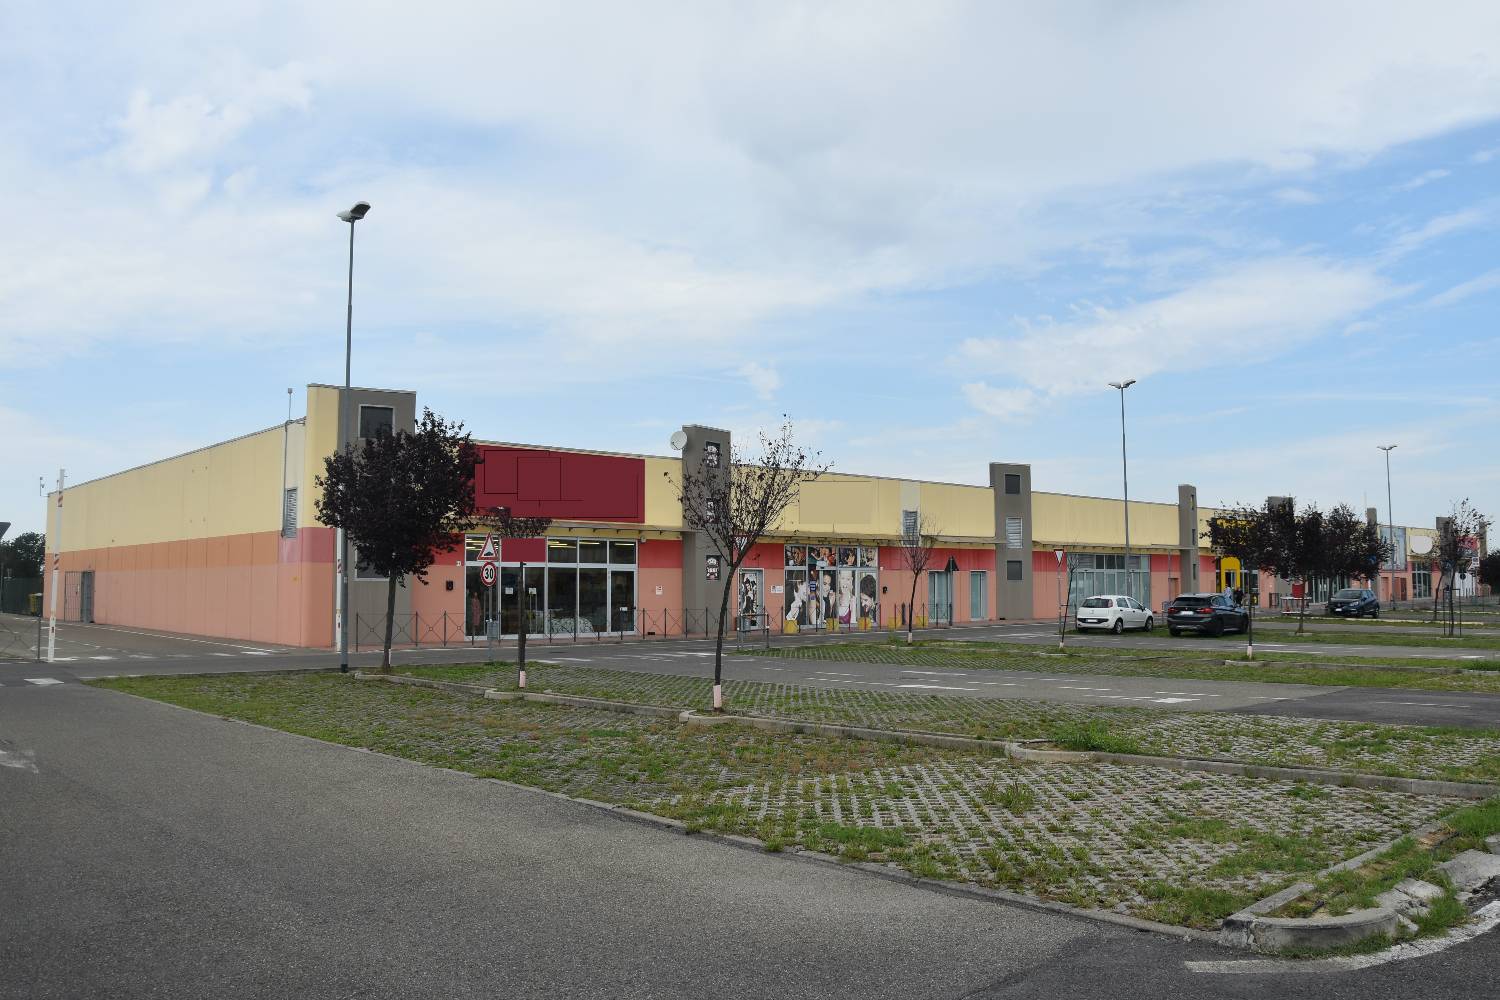 Immobile Commerciale in vendita a Voghera, 7 locali, prezzo € 2.000.000 | PortaleAgenzieImmobiliari.it